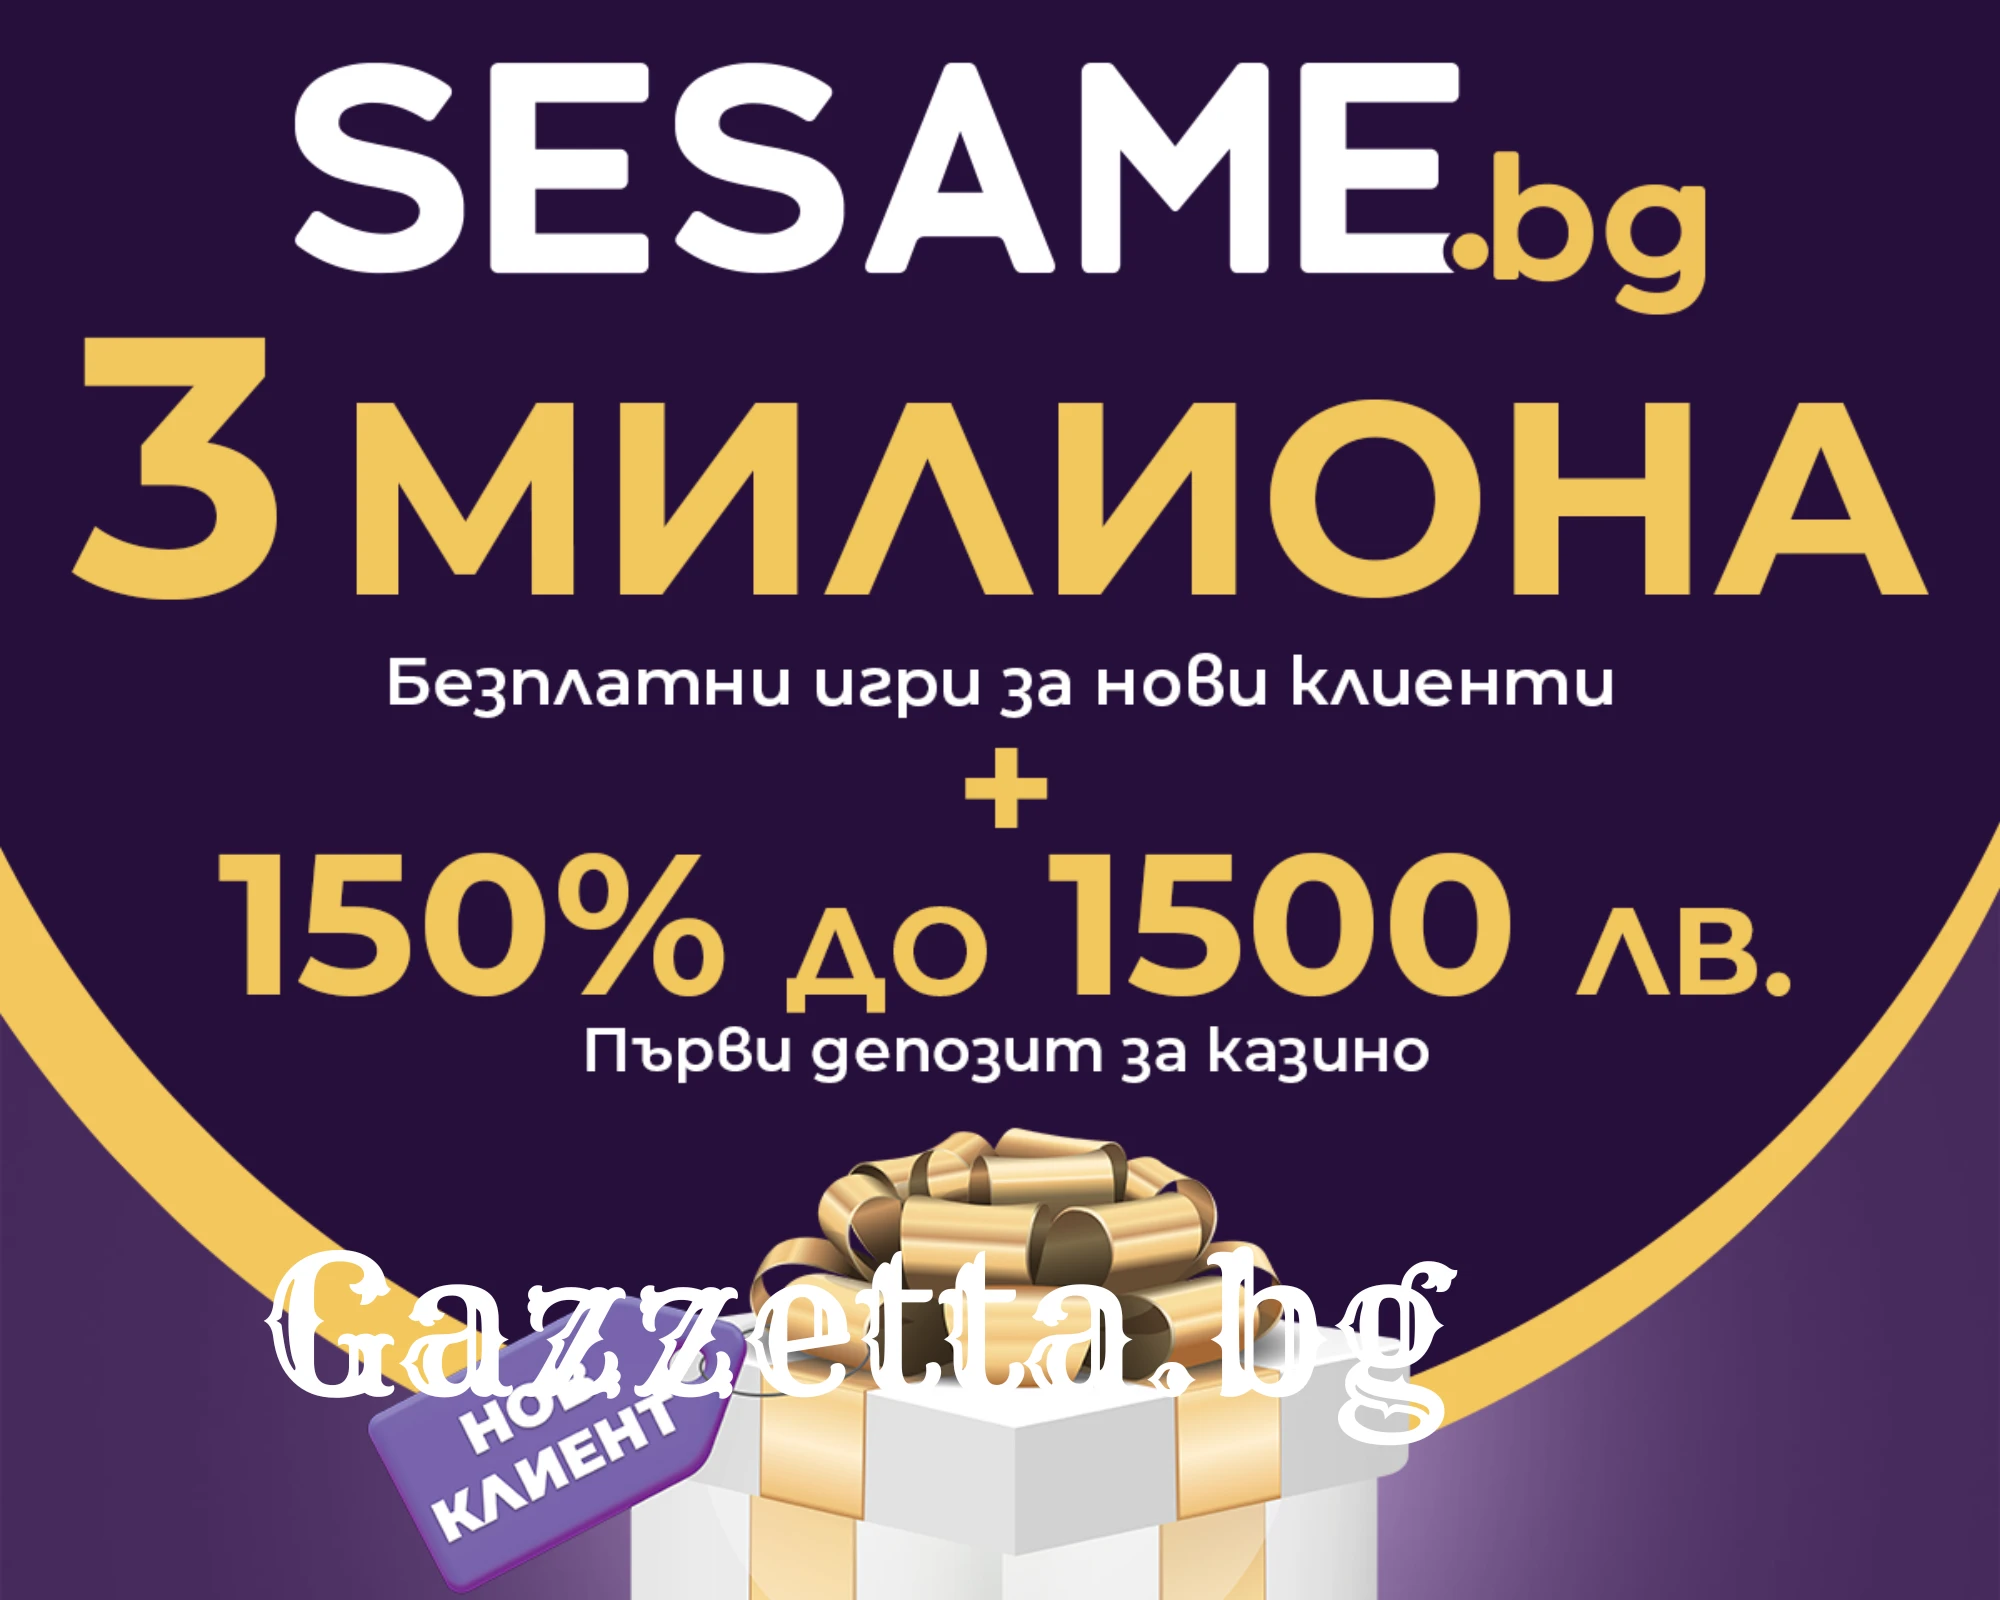 3 милиона безплатни игри + 150% до 1500 лева за нови клиенти в Sesame.bg